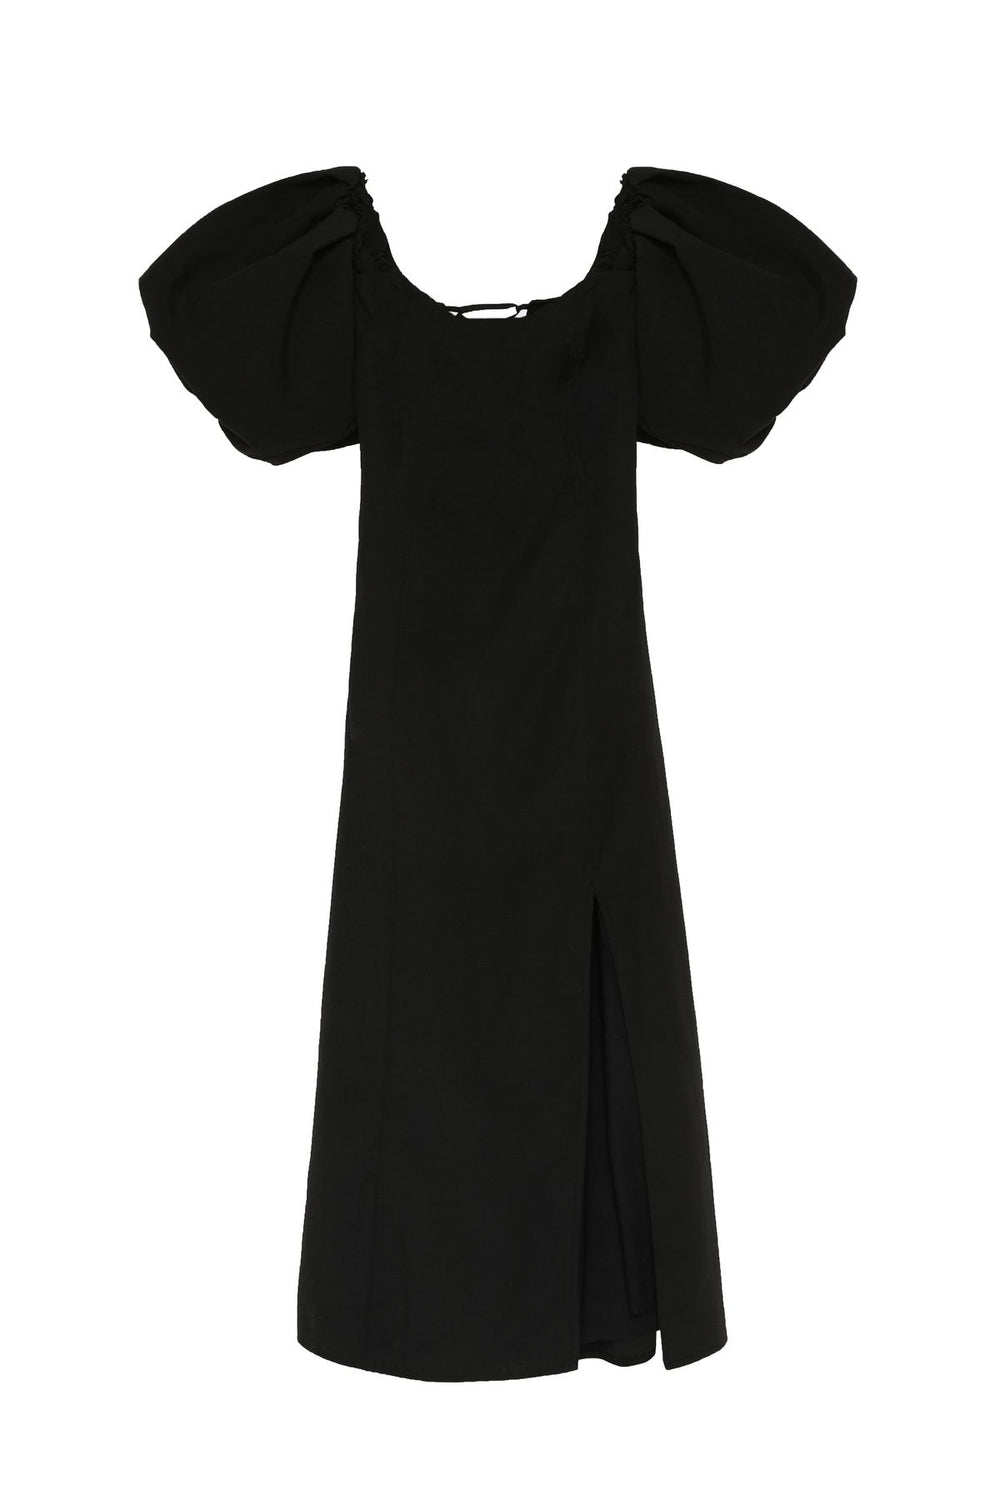 Balloon Sleeve Detailed Slit Dress Black